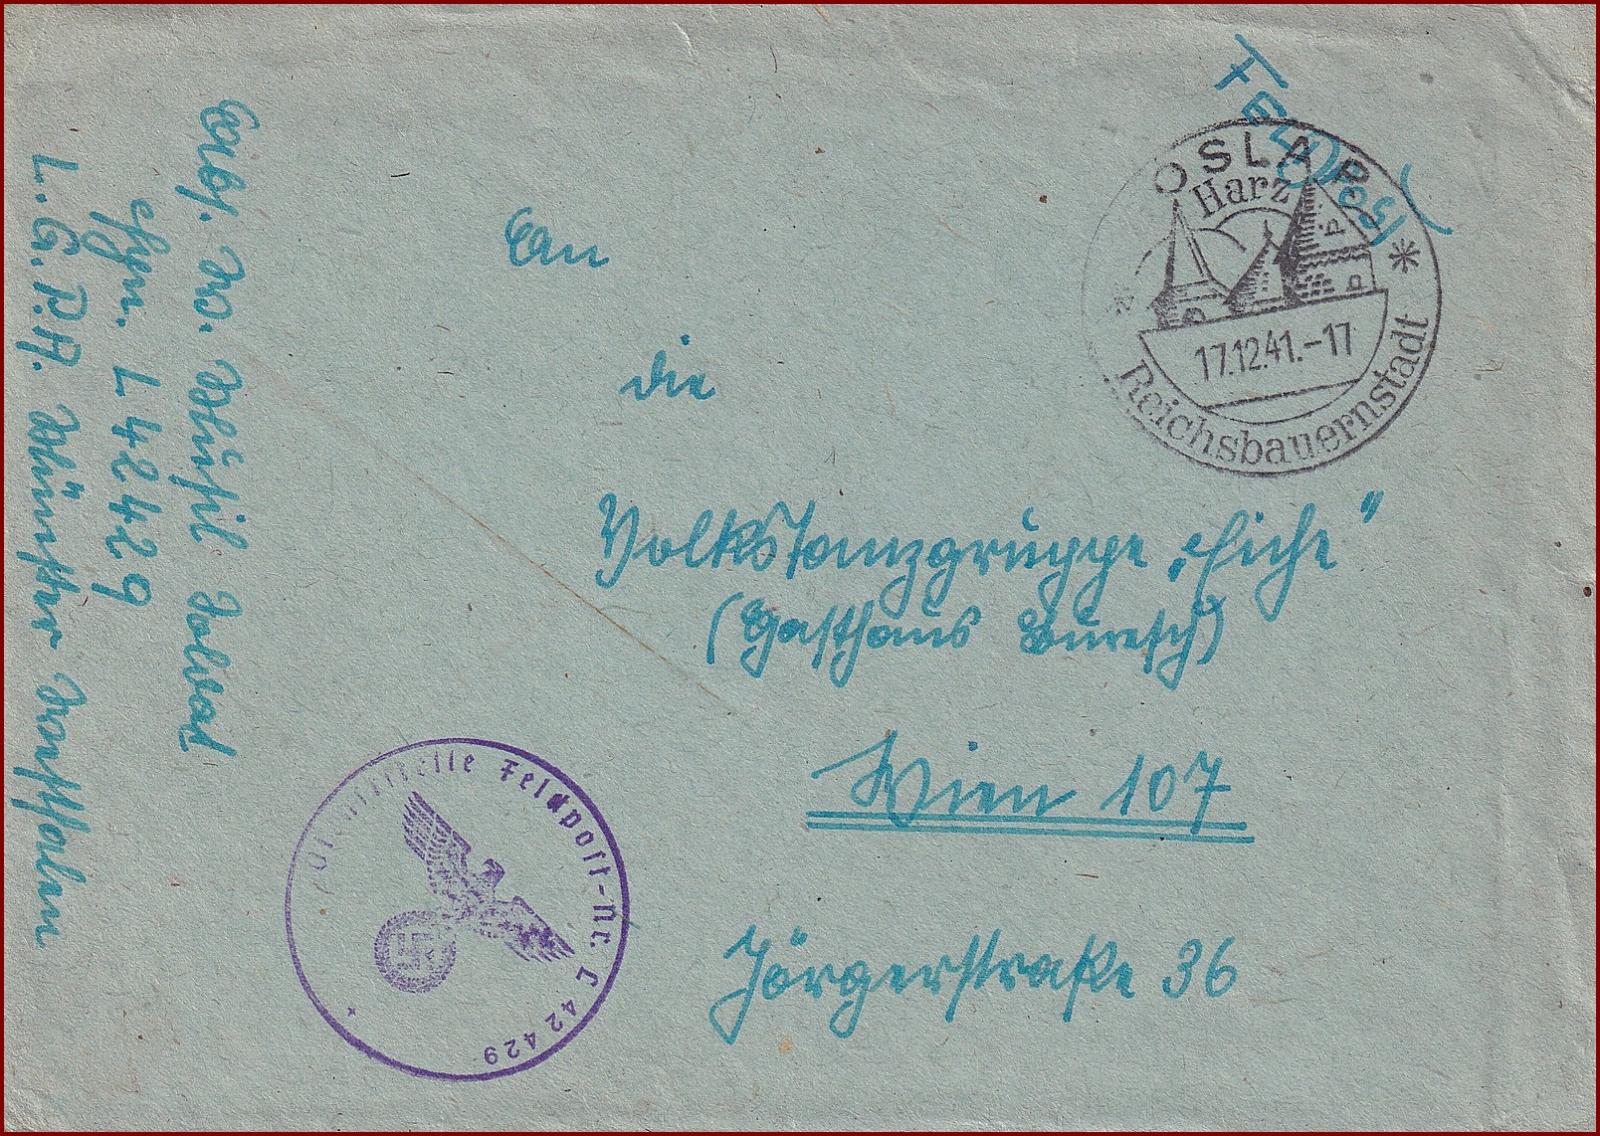 Deutsches Reich * Briefstempel, Feldpost obálka, pečiatka VH * F040 - Filatelia